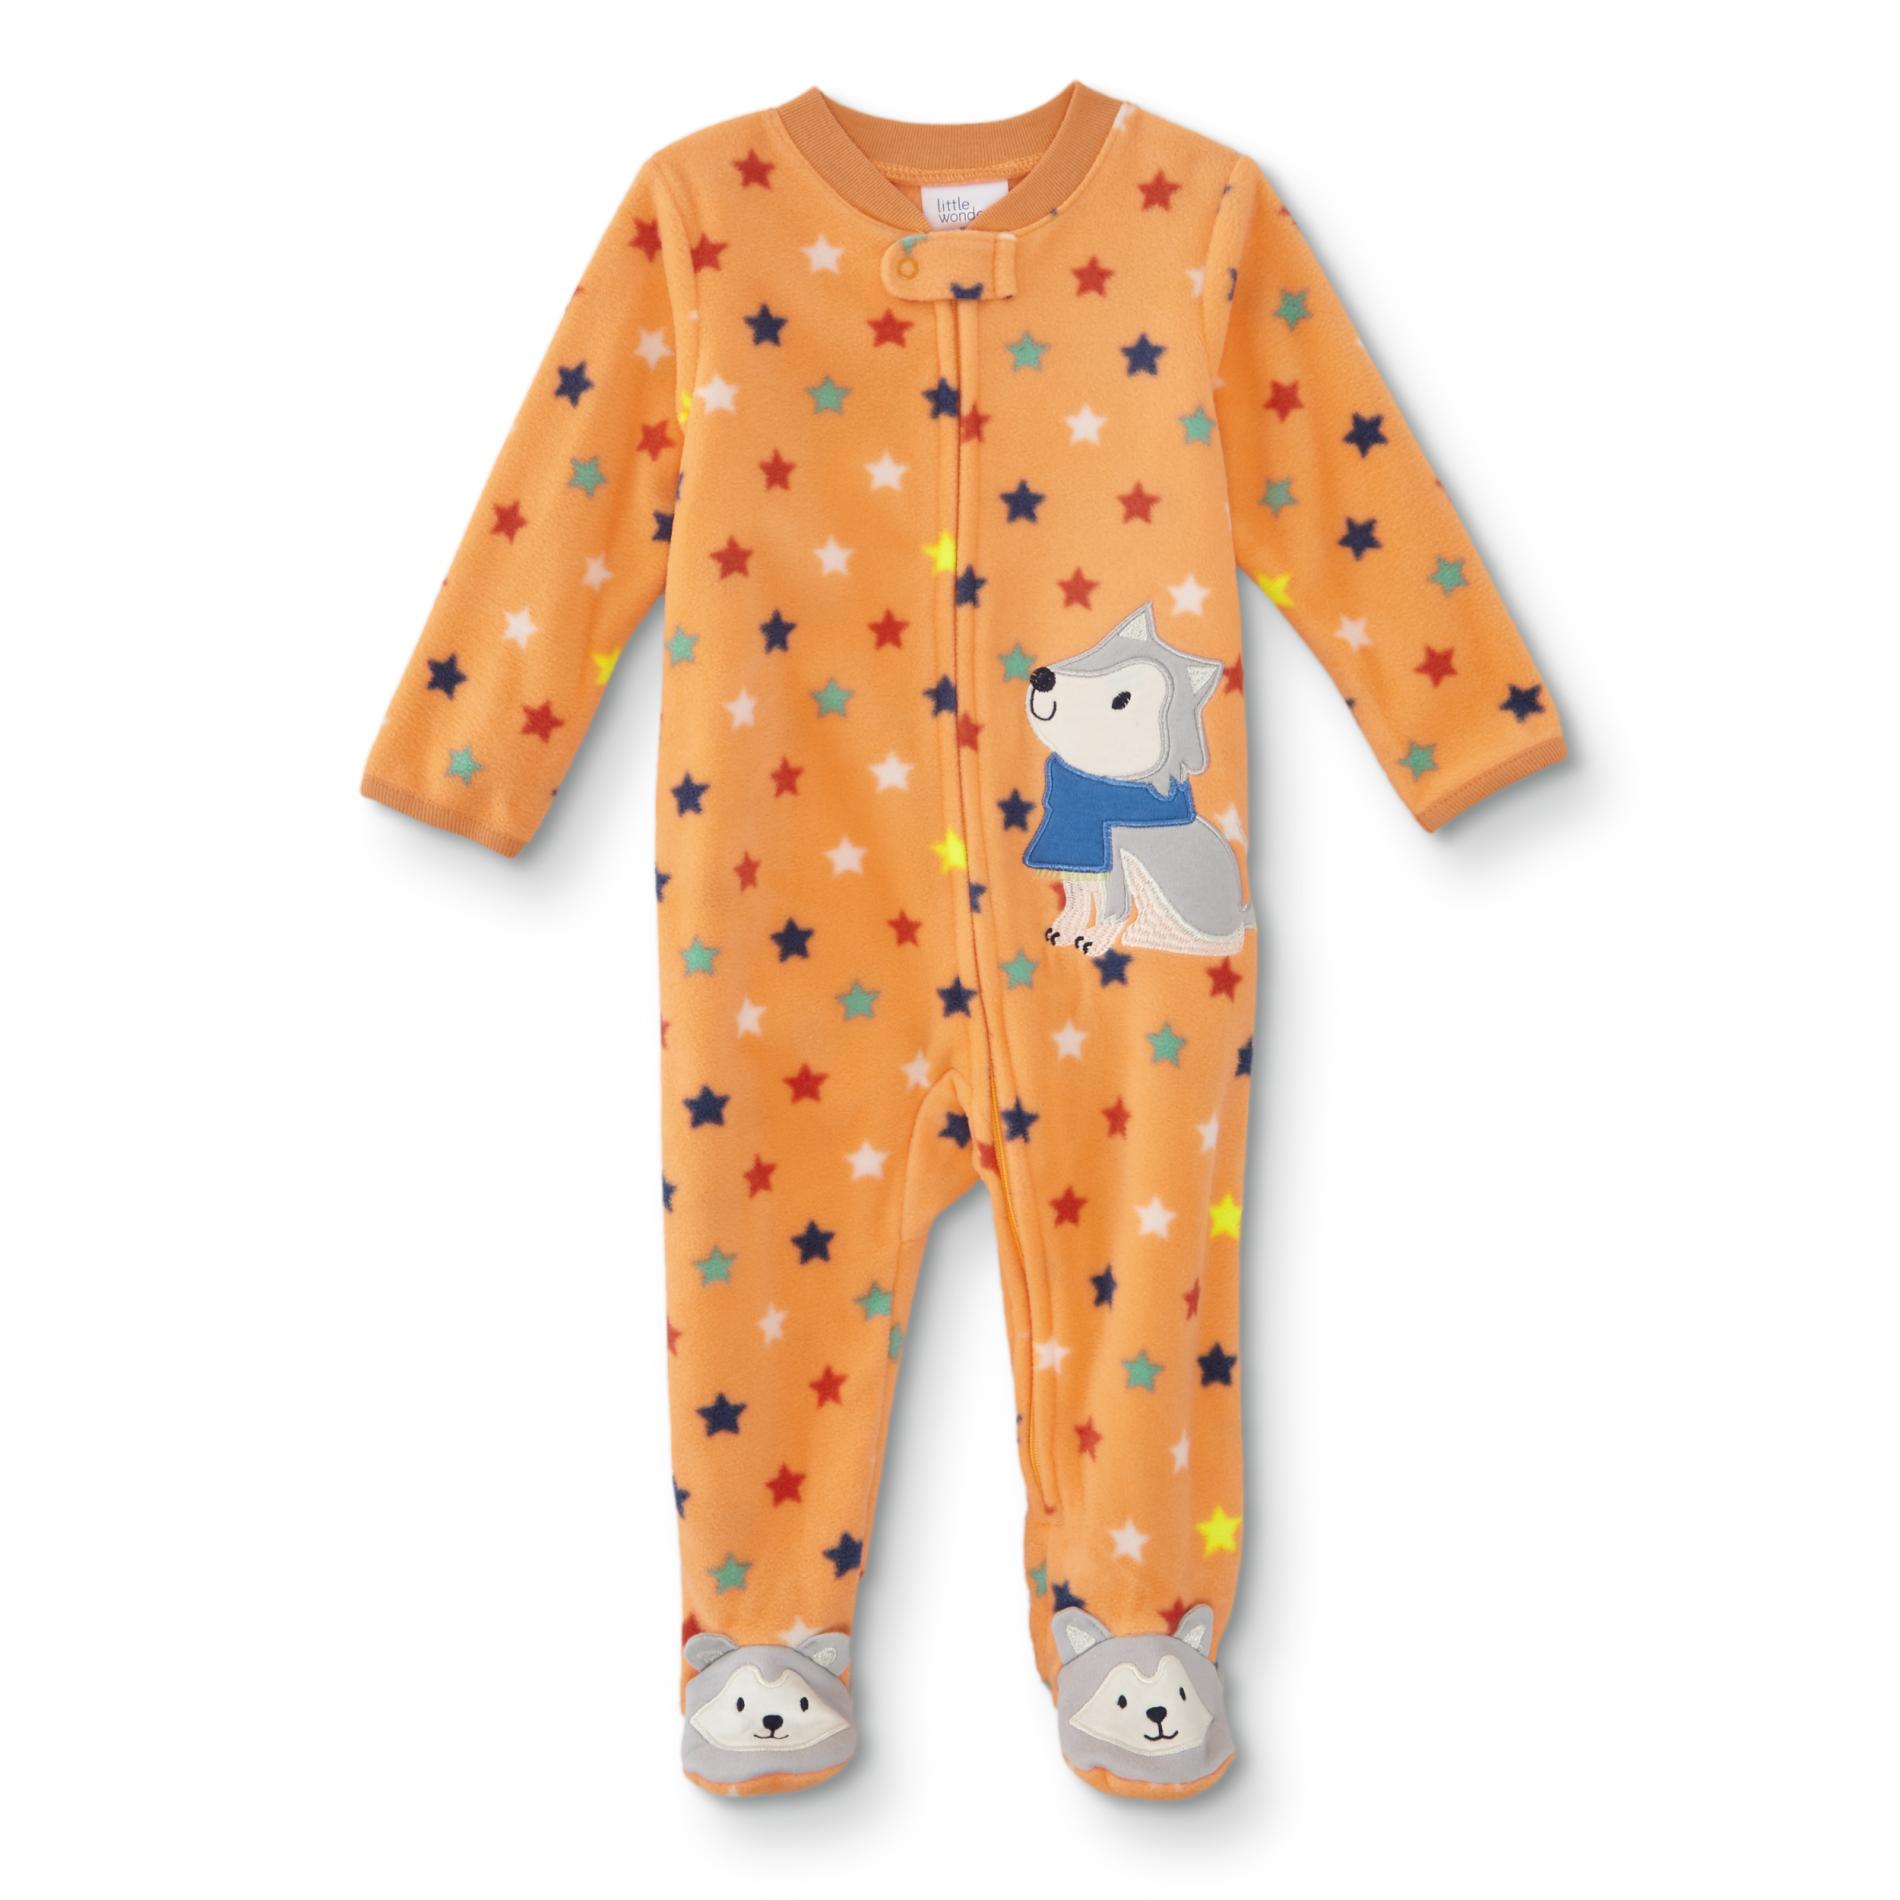 Little Wonders Infant Boys' Footed Sleeper Pajamas - Stars/Wolf